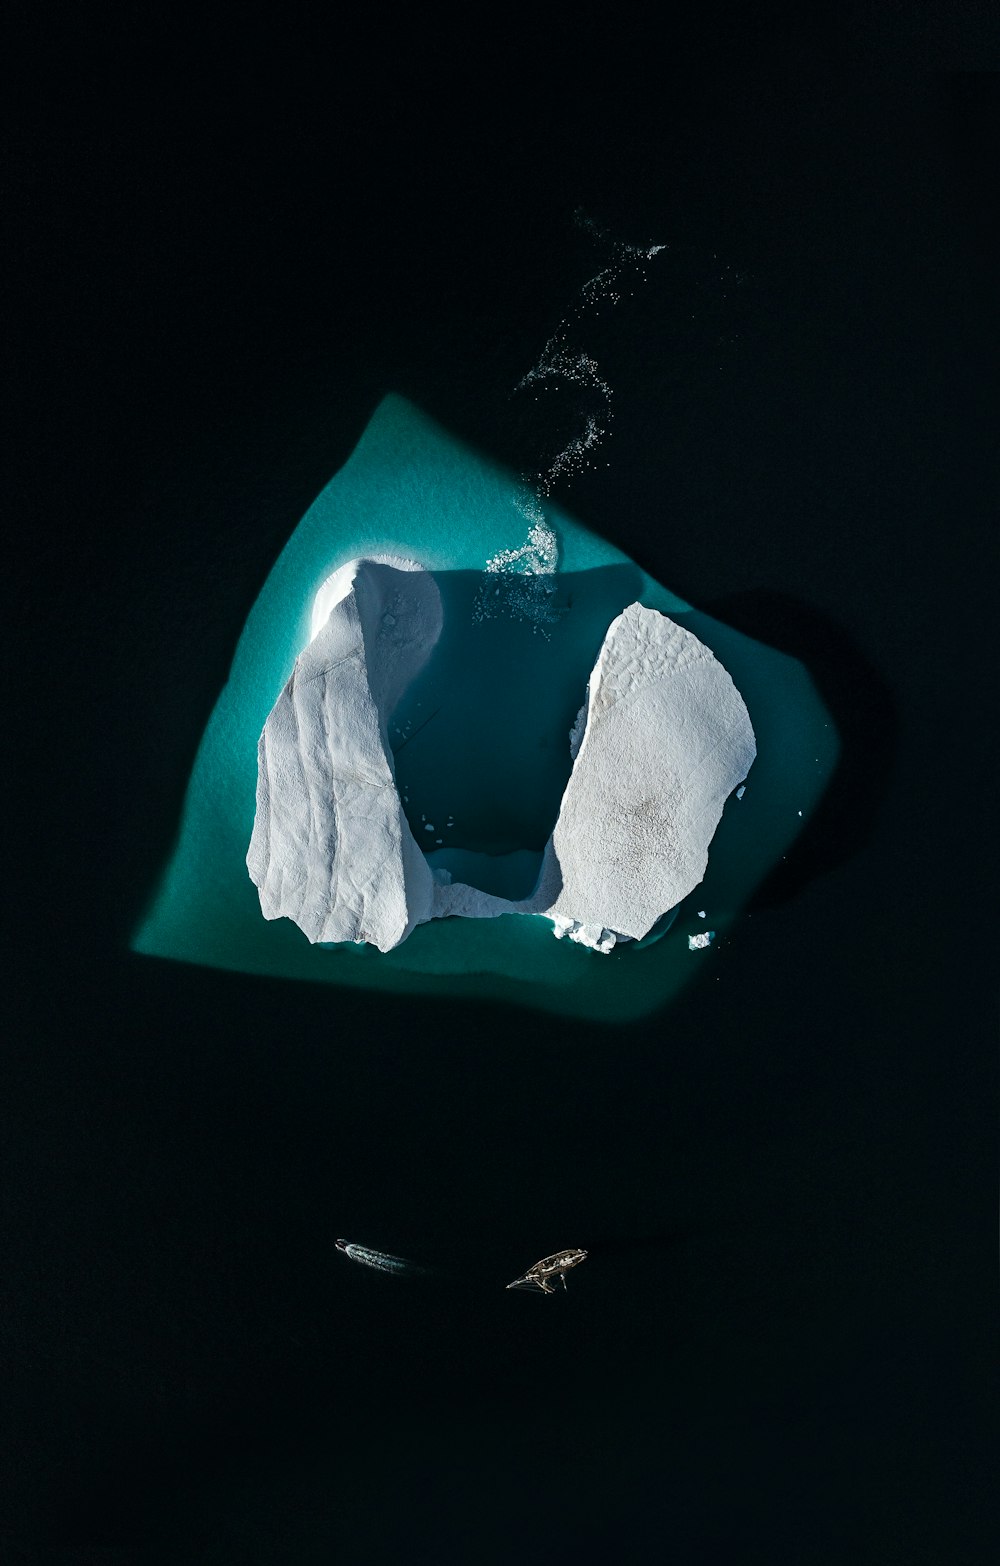 Vue aérienne d’un iceberg dans l’eau